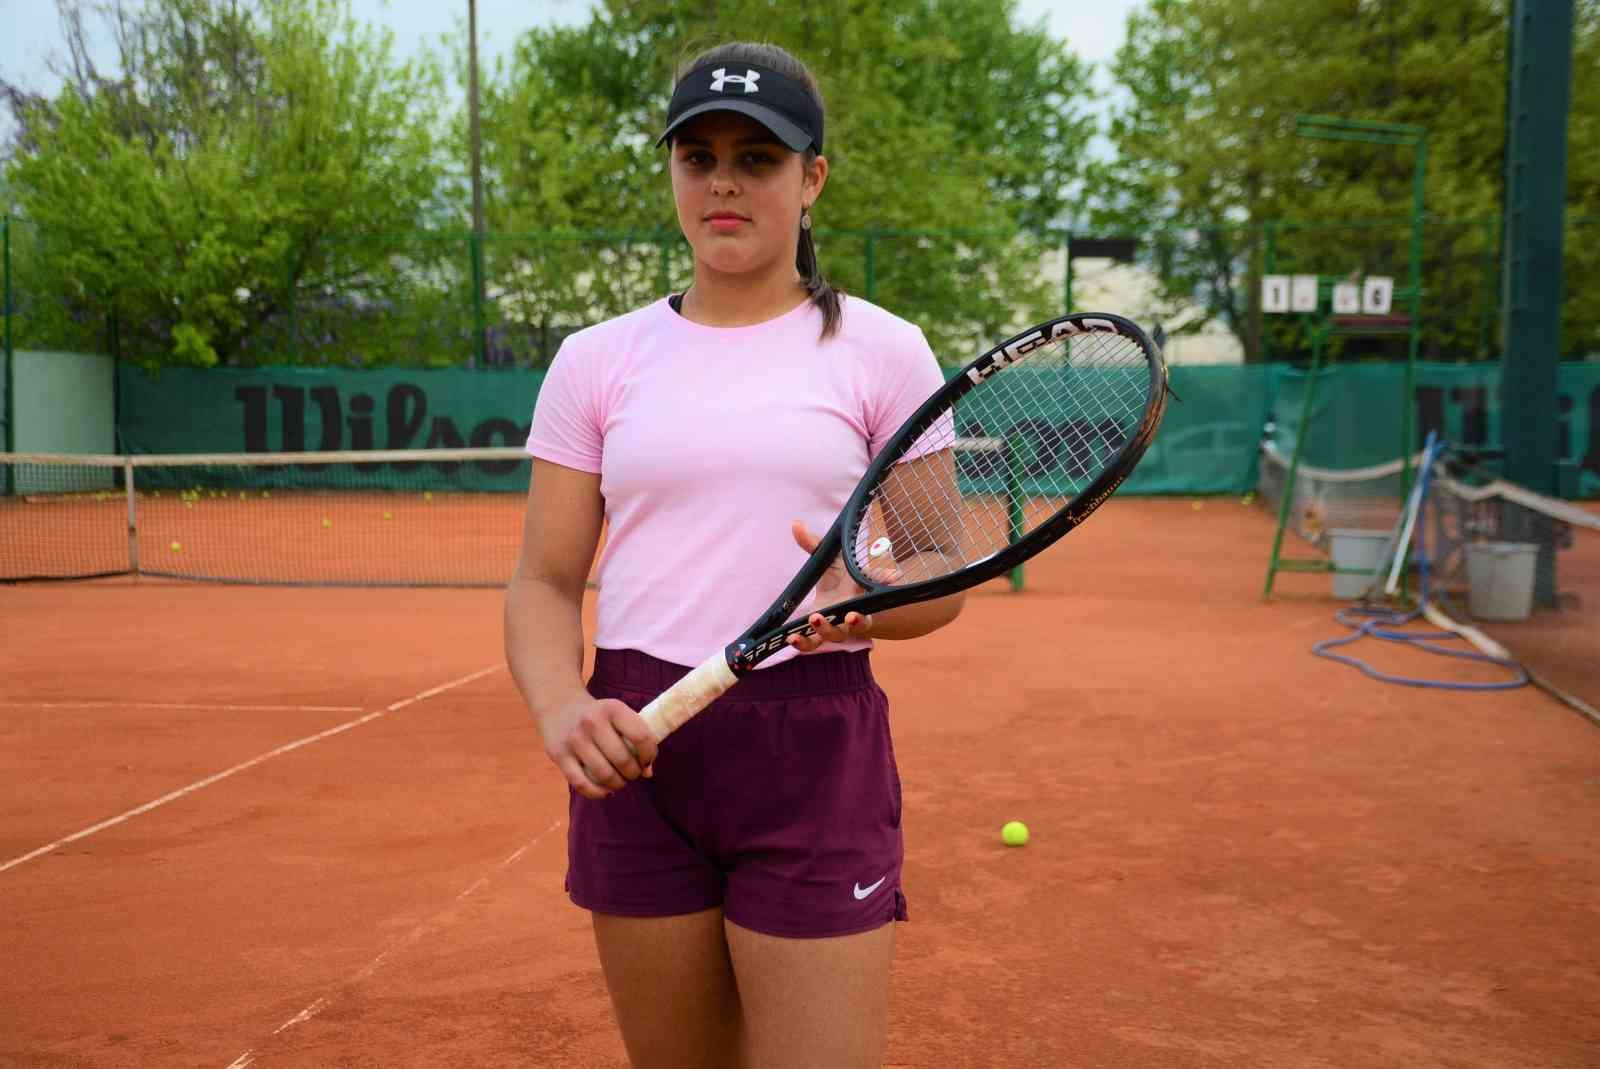 Kocaeli’de yaşayan tenisçi Duru Kuşçu, katıldığı son 16 ulusal turnuvanın tamamında birinci olarak büyük başarıya imza attı. Kuşçu, ayrıca kendi ...